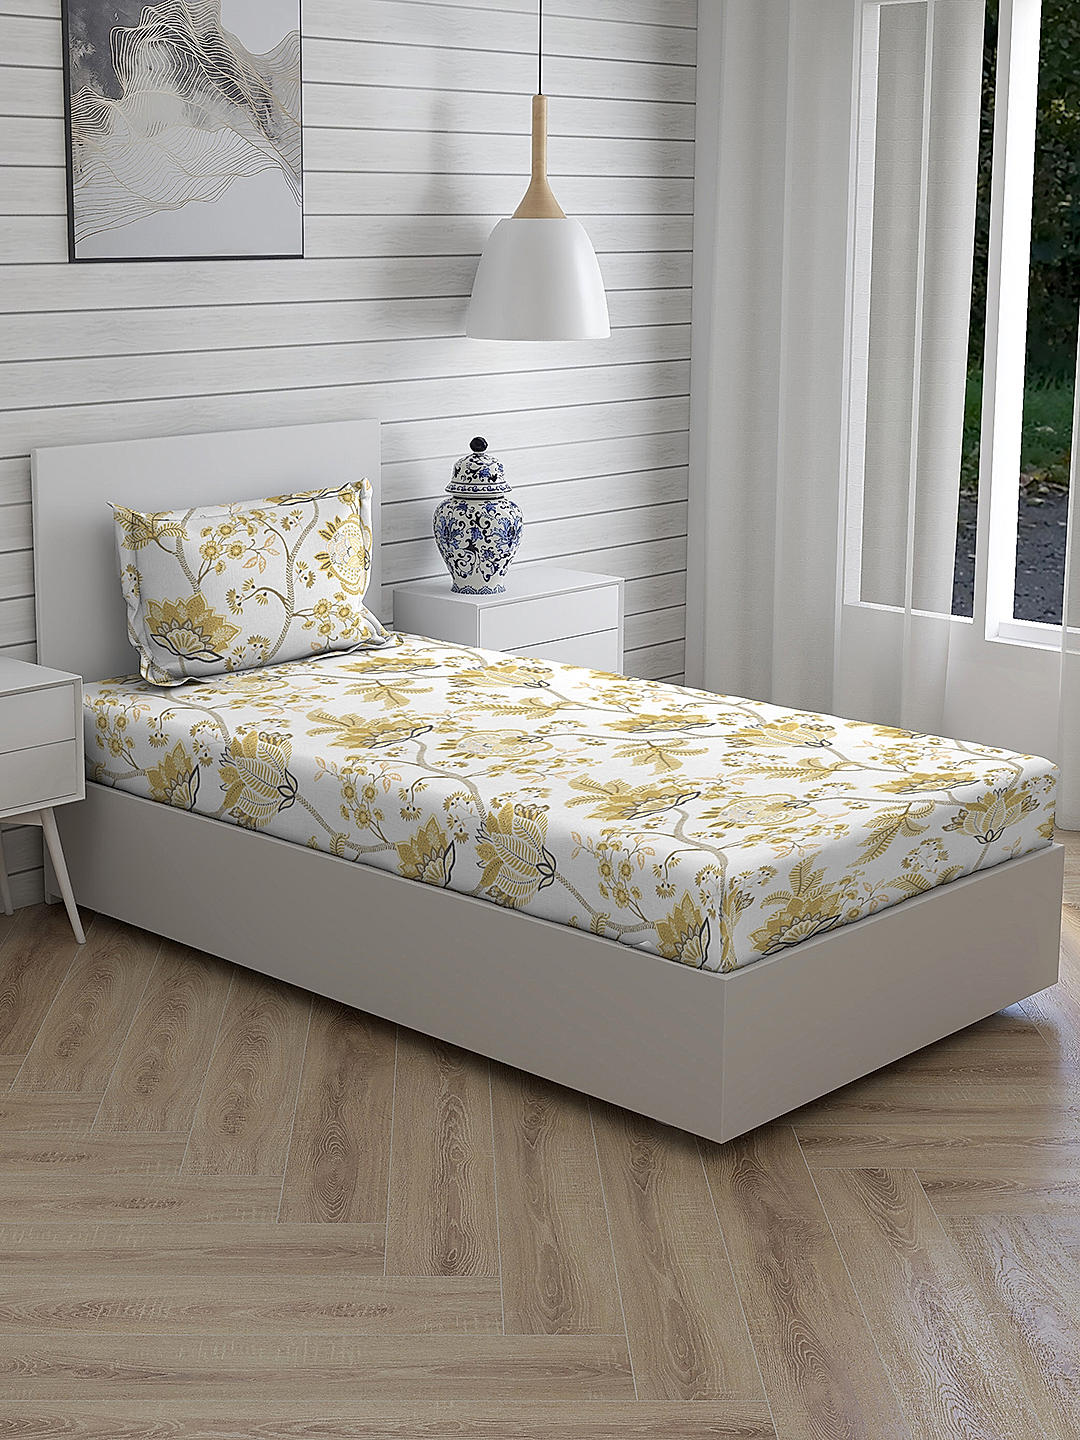 Iris Gaze-2 100% cotton Fine White/Yellow Colored Floral Print Single Bed Sheet Set